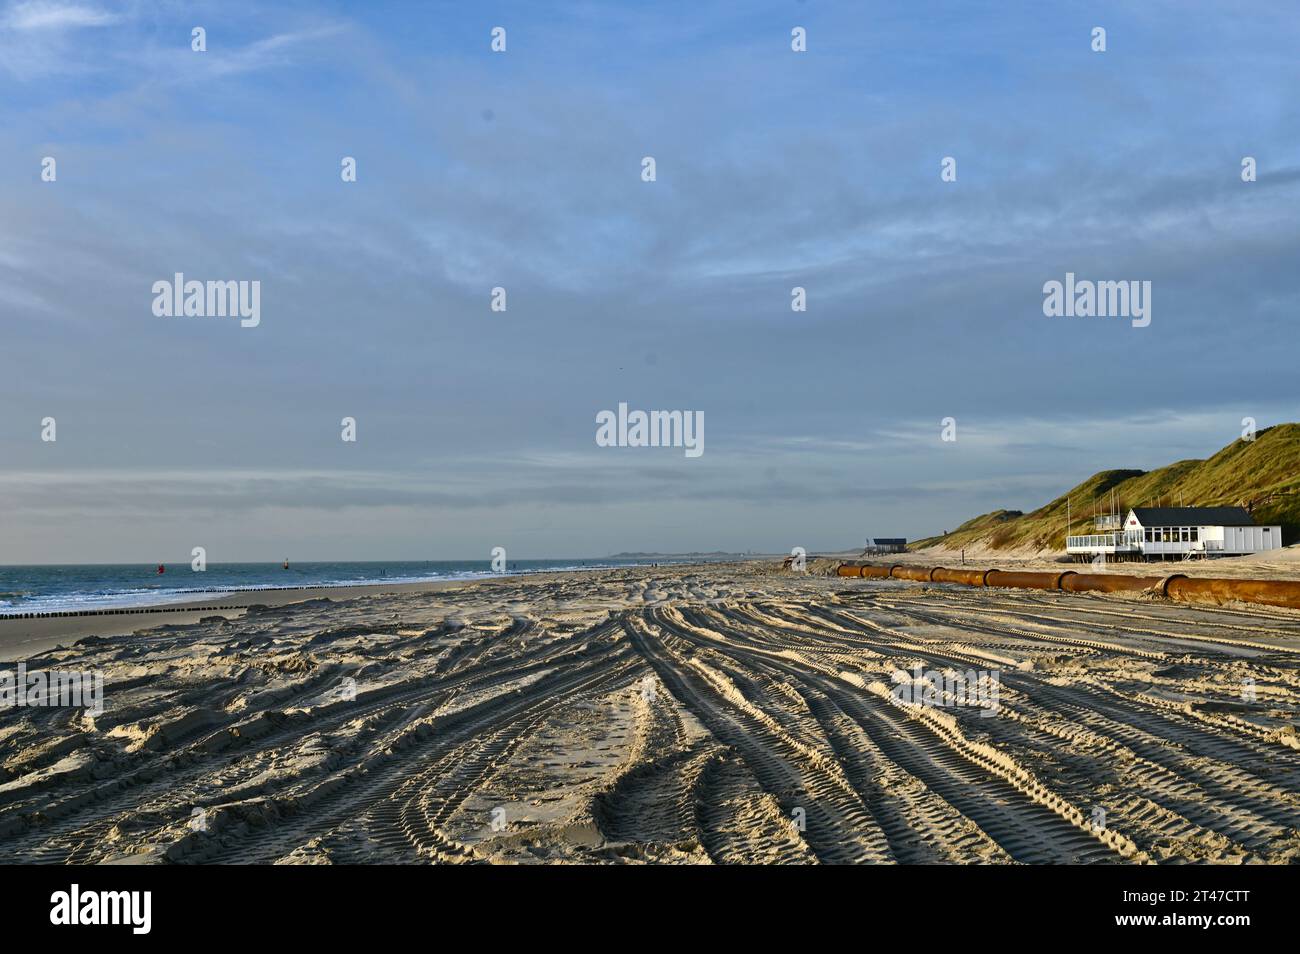 Réapprovisionnement en sable sur la plage de Dishoek, Zeeland, qui élargit et élève la plage contre la montée de l'eau dans le futur Banque D'Images